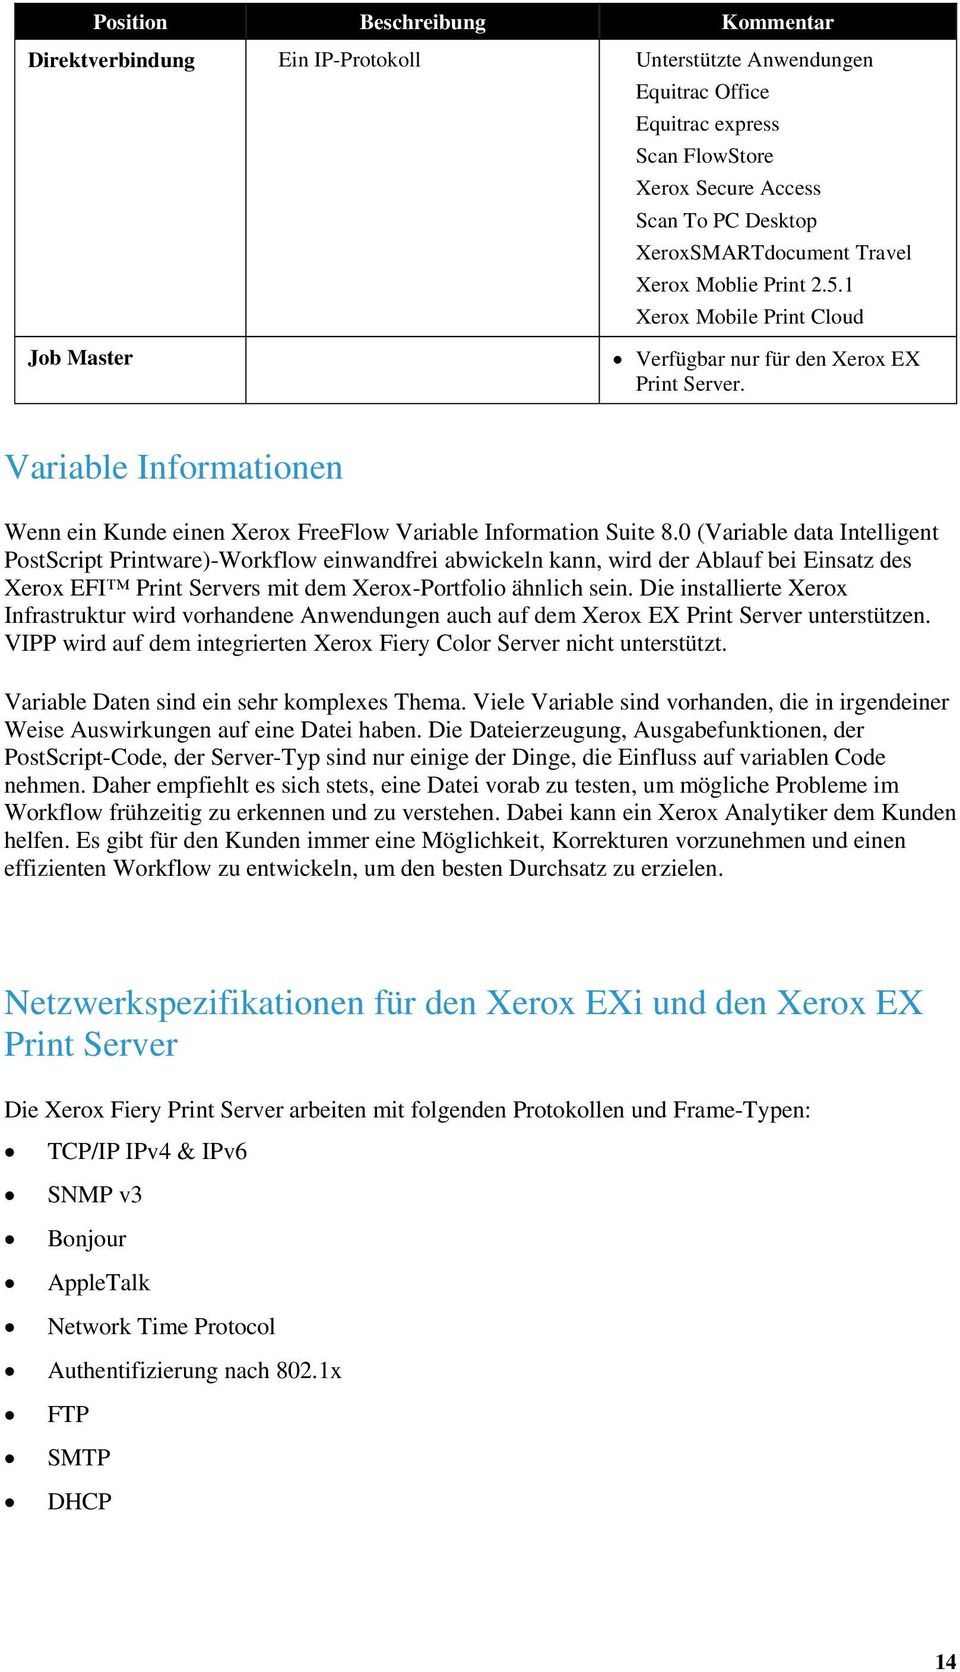 0 (Variable data Intelligent PostScript Printware)-Workflow einwandfrei abwickeln kann, wird der Ablauf bei Einsatz des erox EFI Print Servers mit dem erox-portfolio ähnlich sein.